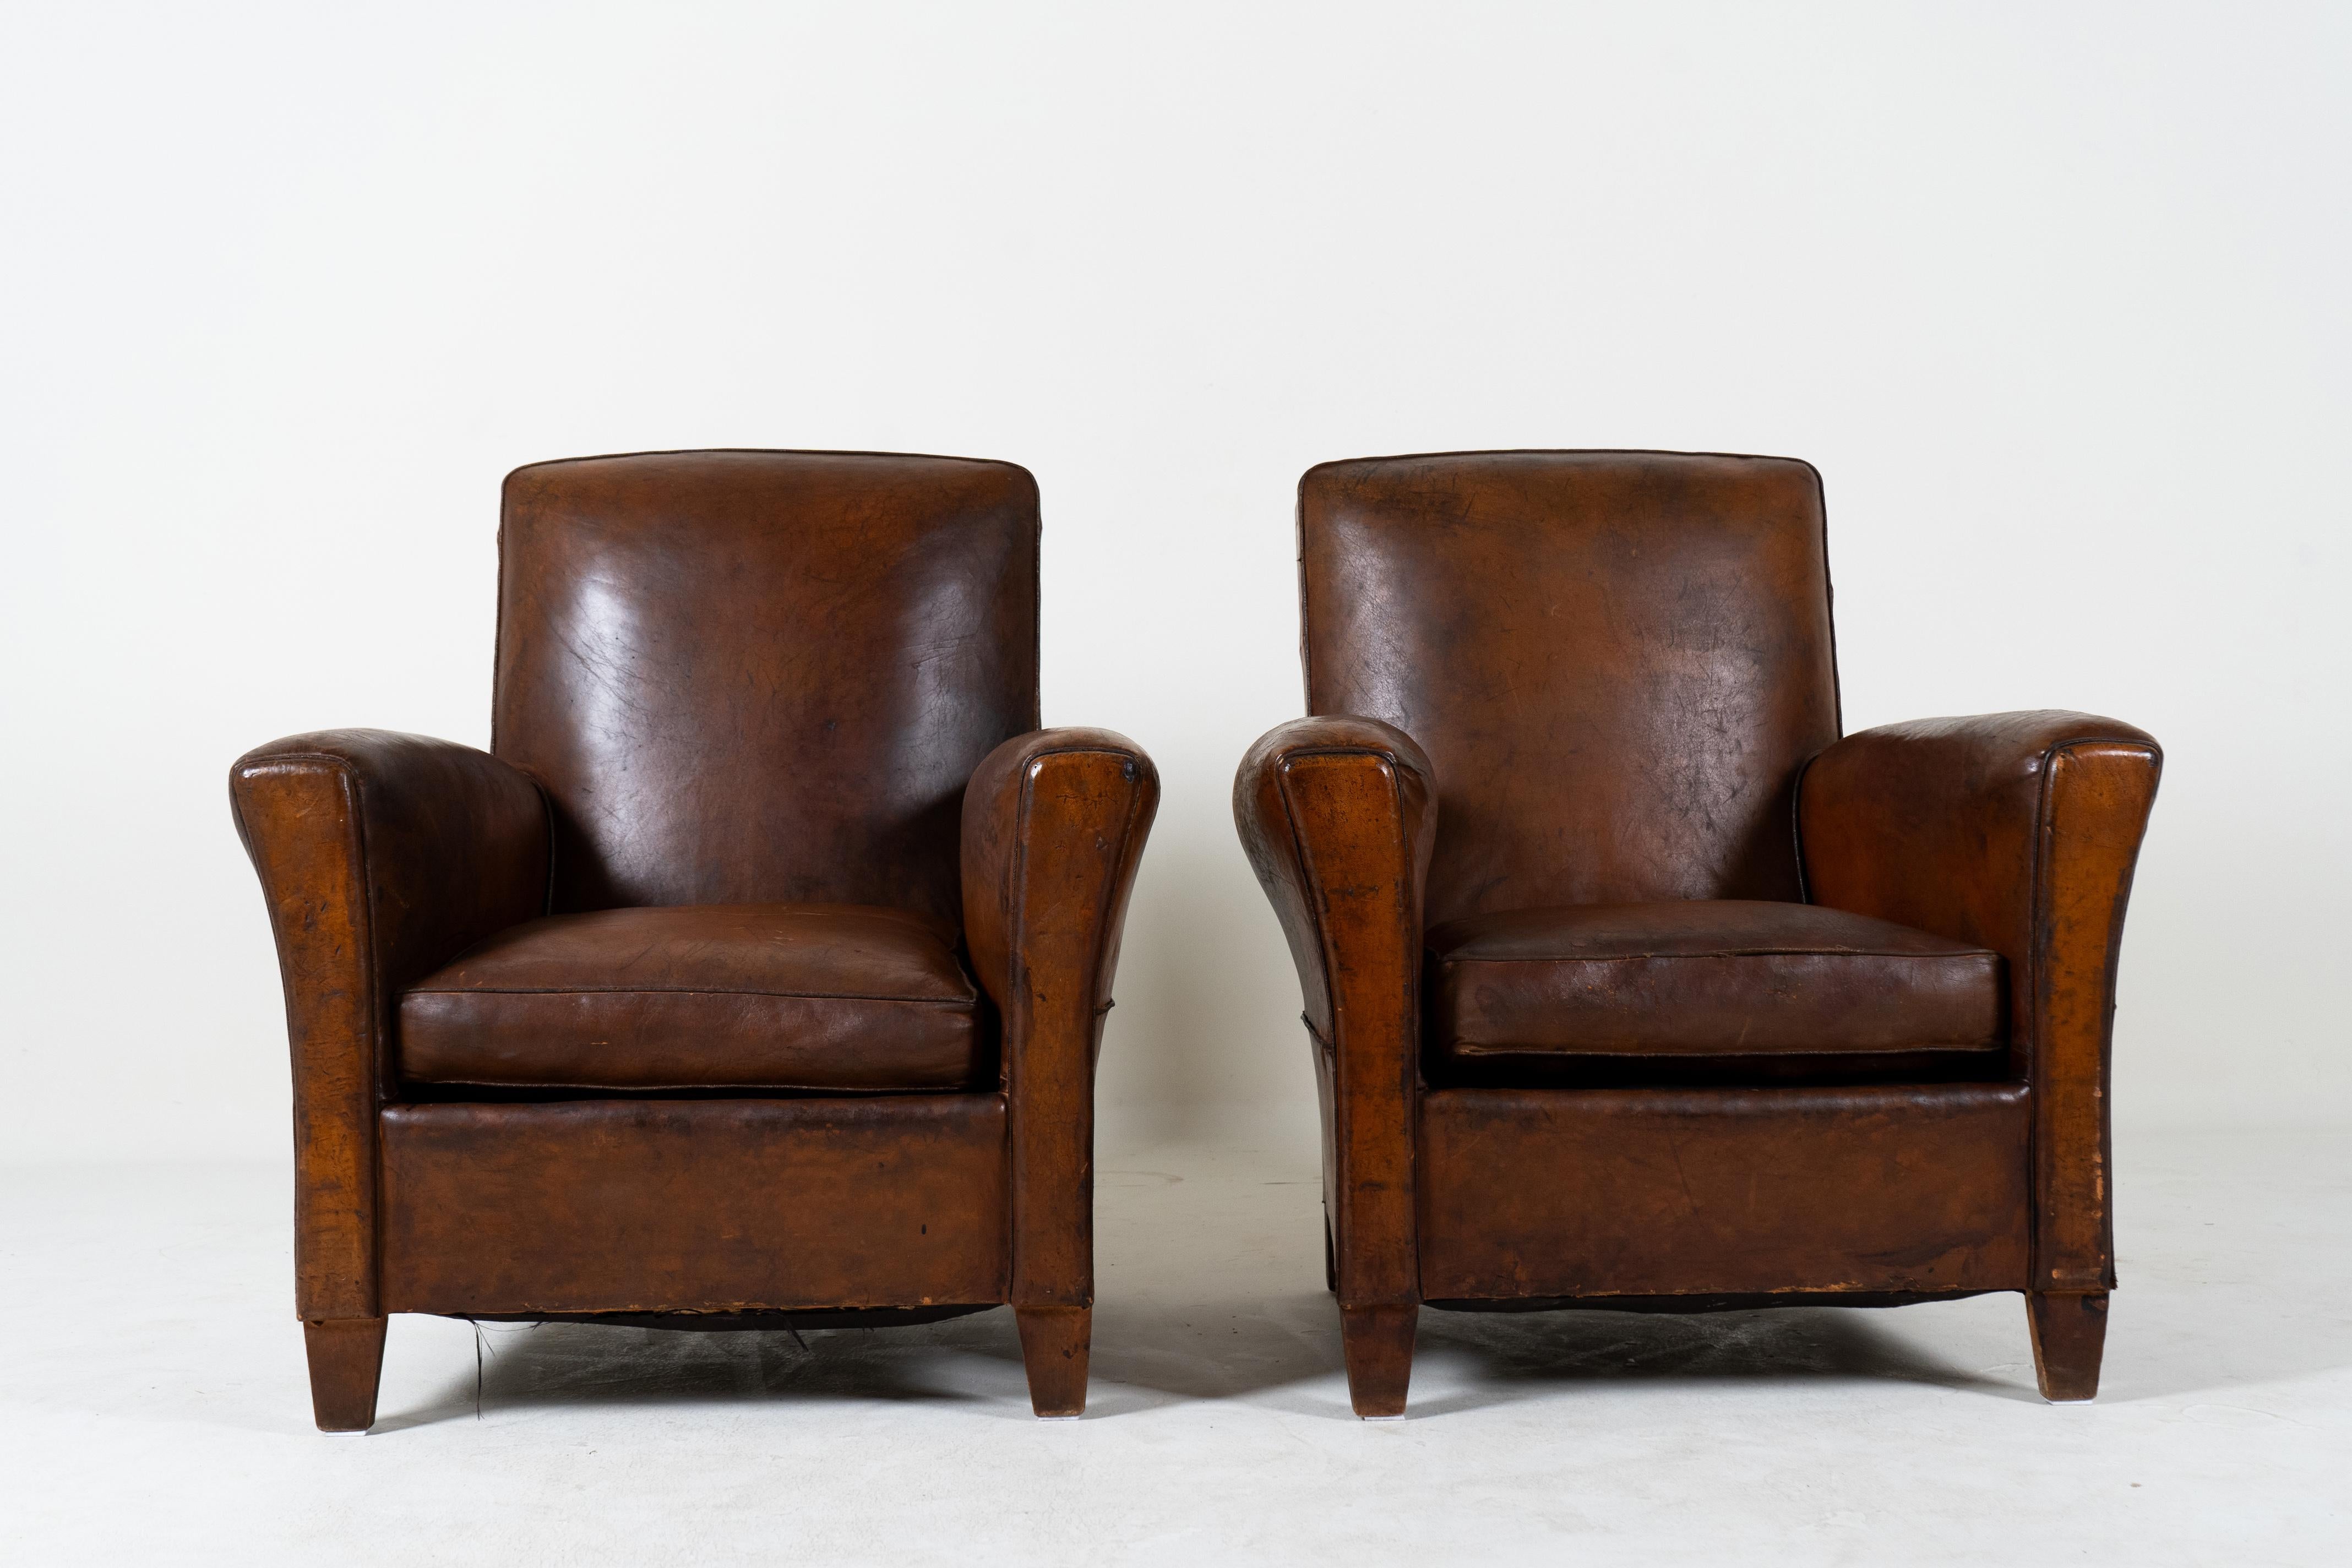 Ces fauteuils club en cuir français aux proportions gracieuses ont  Les lignes classiques de l'Art déco avec des accoudoirs légèrement arqués vers l'extérieur et des dossiers inclinés.   Les chaises sont confortables et parfaitement dimensionnées